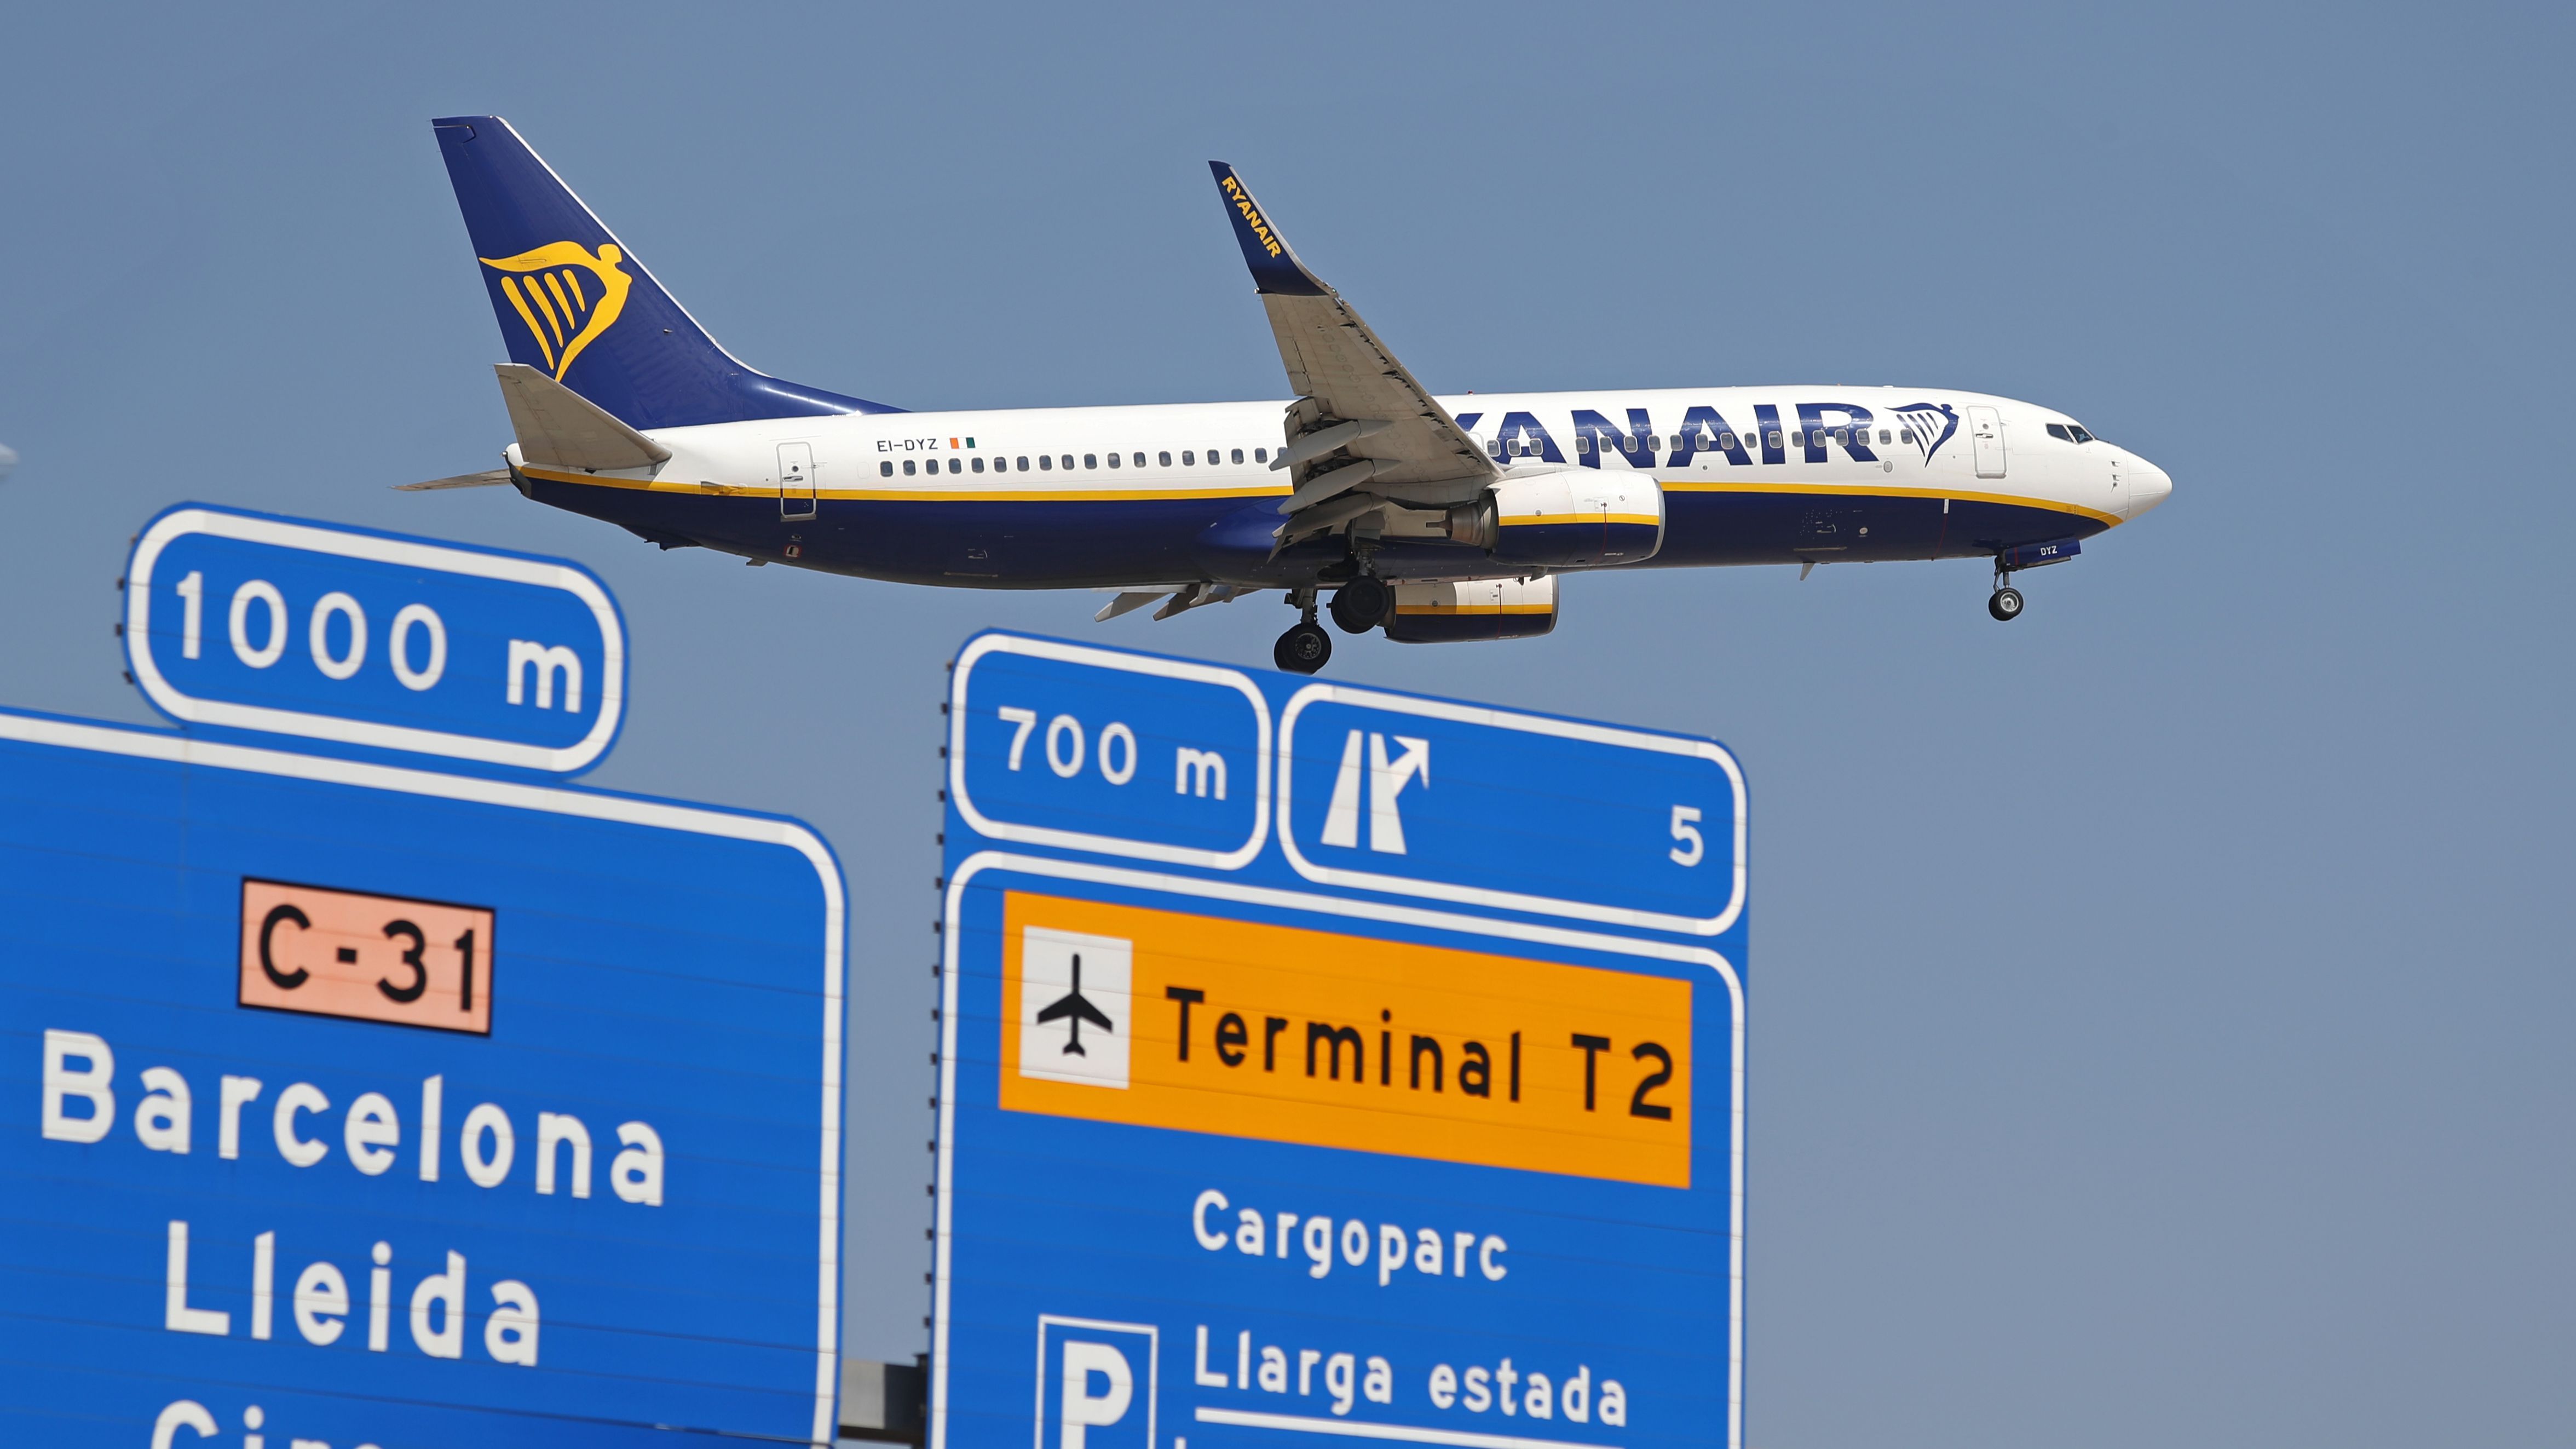 Ya no habrá más vuelos baratos de Ryanair a 10 euros